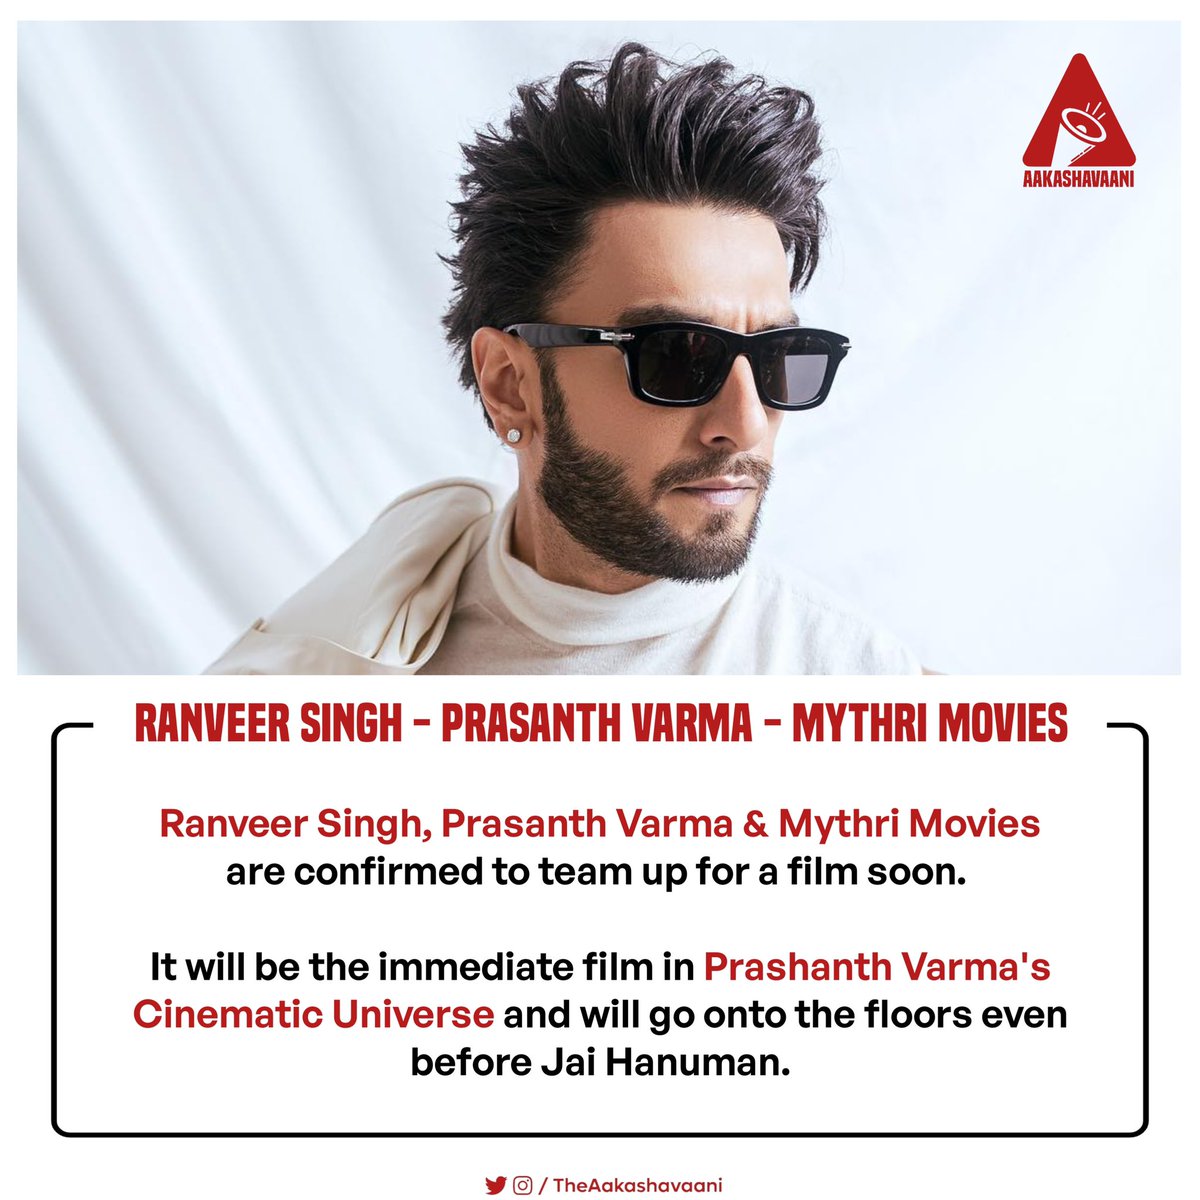 Confirmed - #RanveerSingh - Prasanth Varma - Mythri Movies teaming up soon.